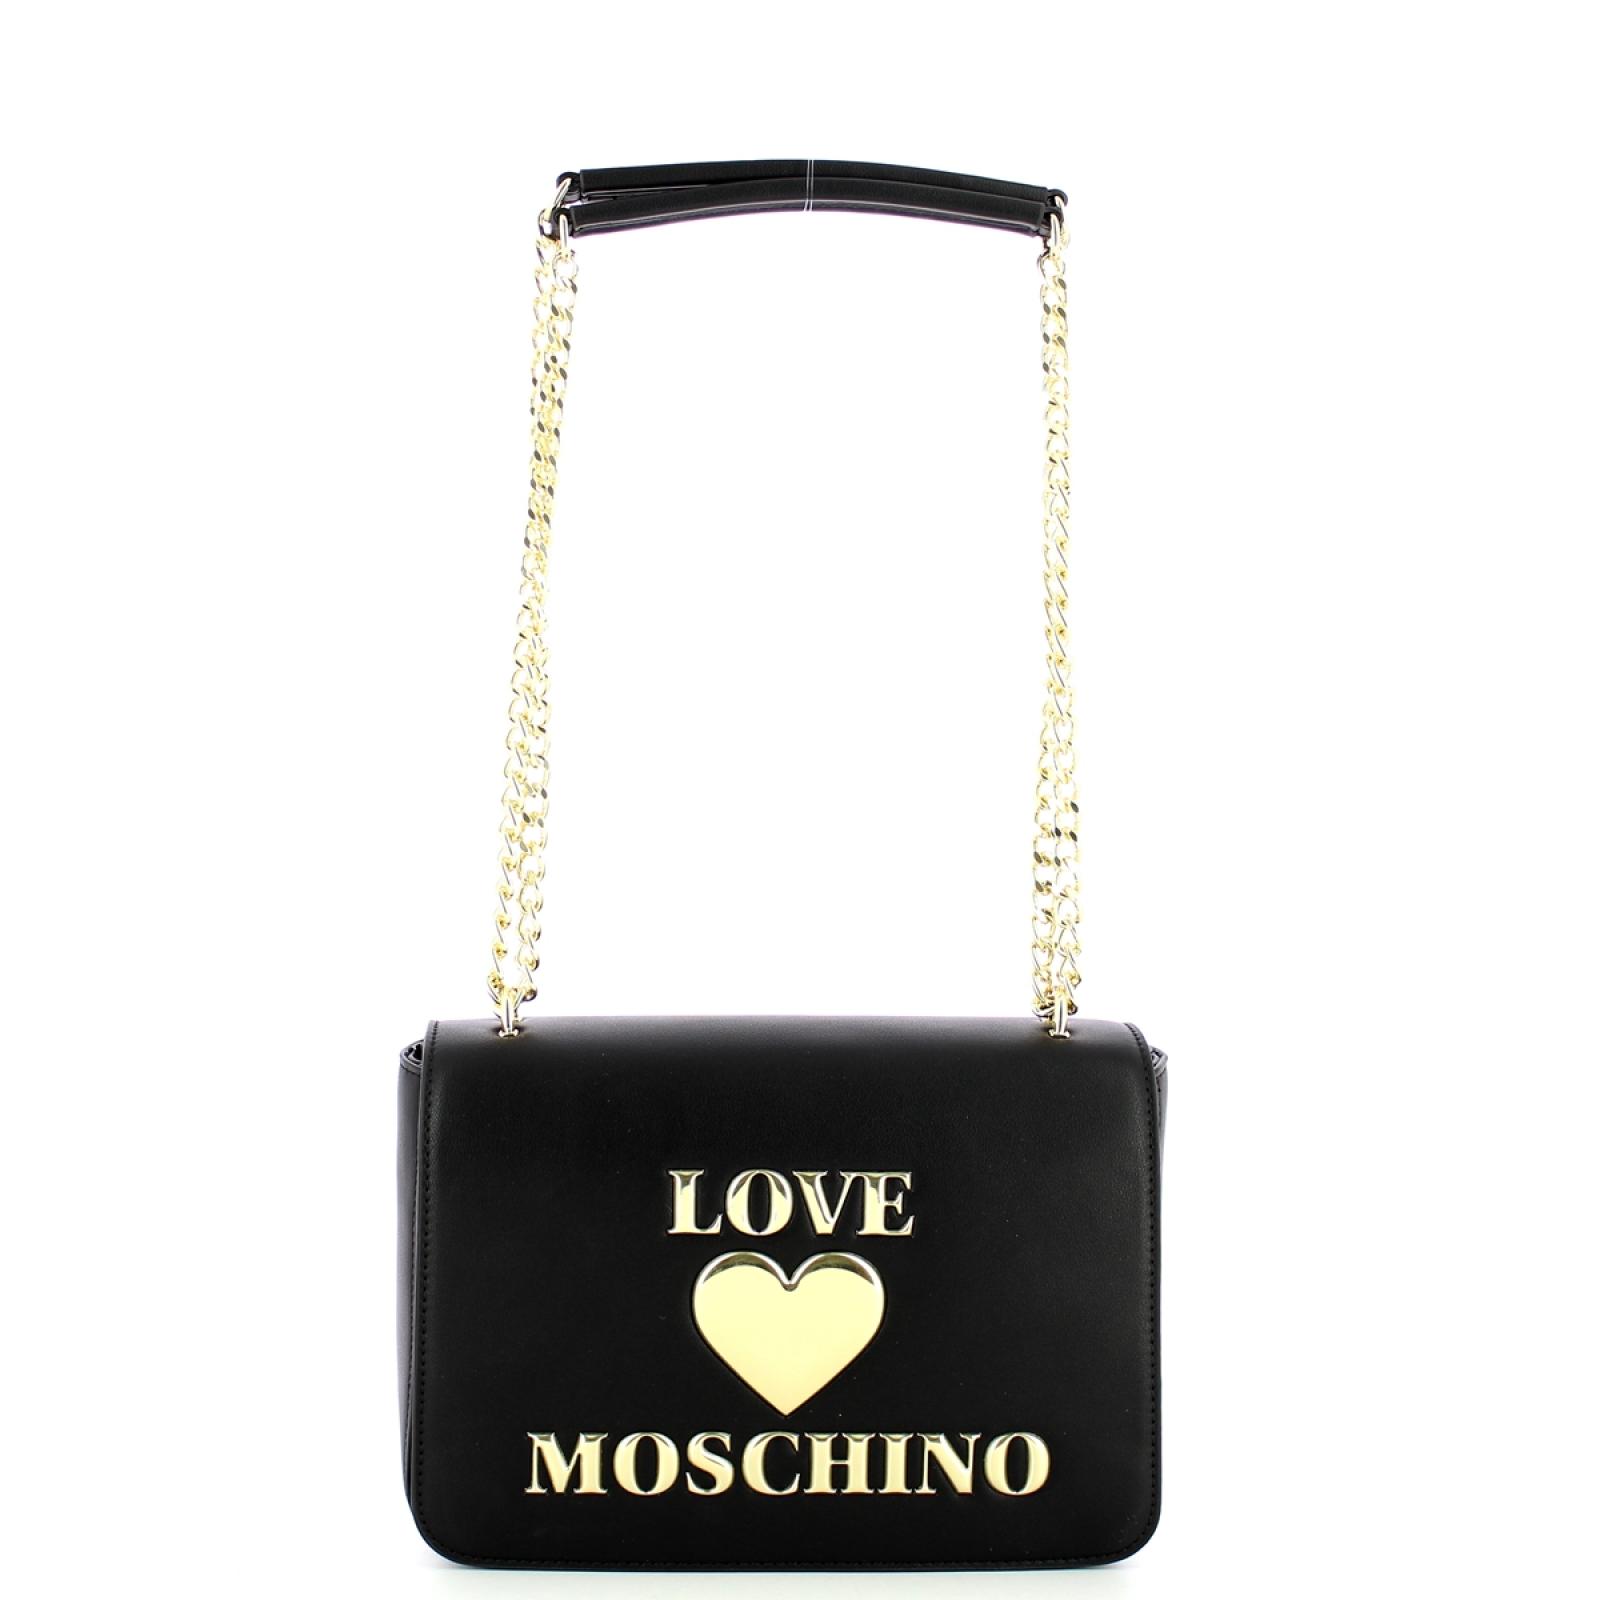 Love Moschino Borsa a spalla Cuore - 1